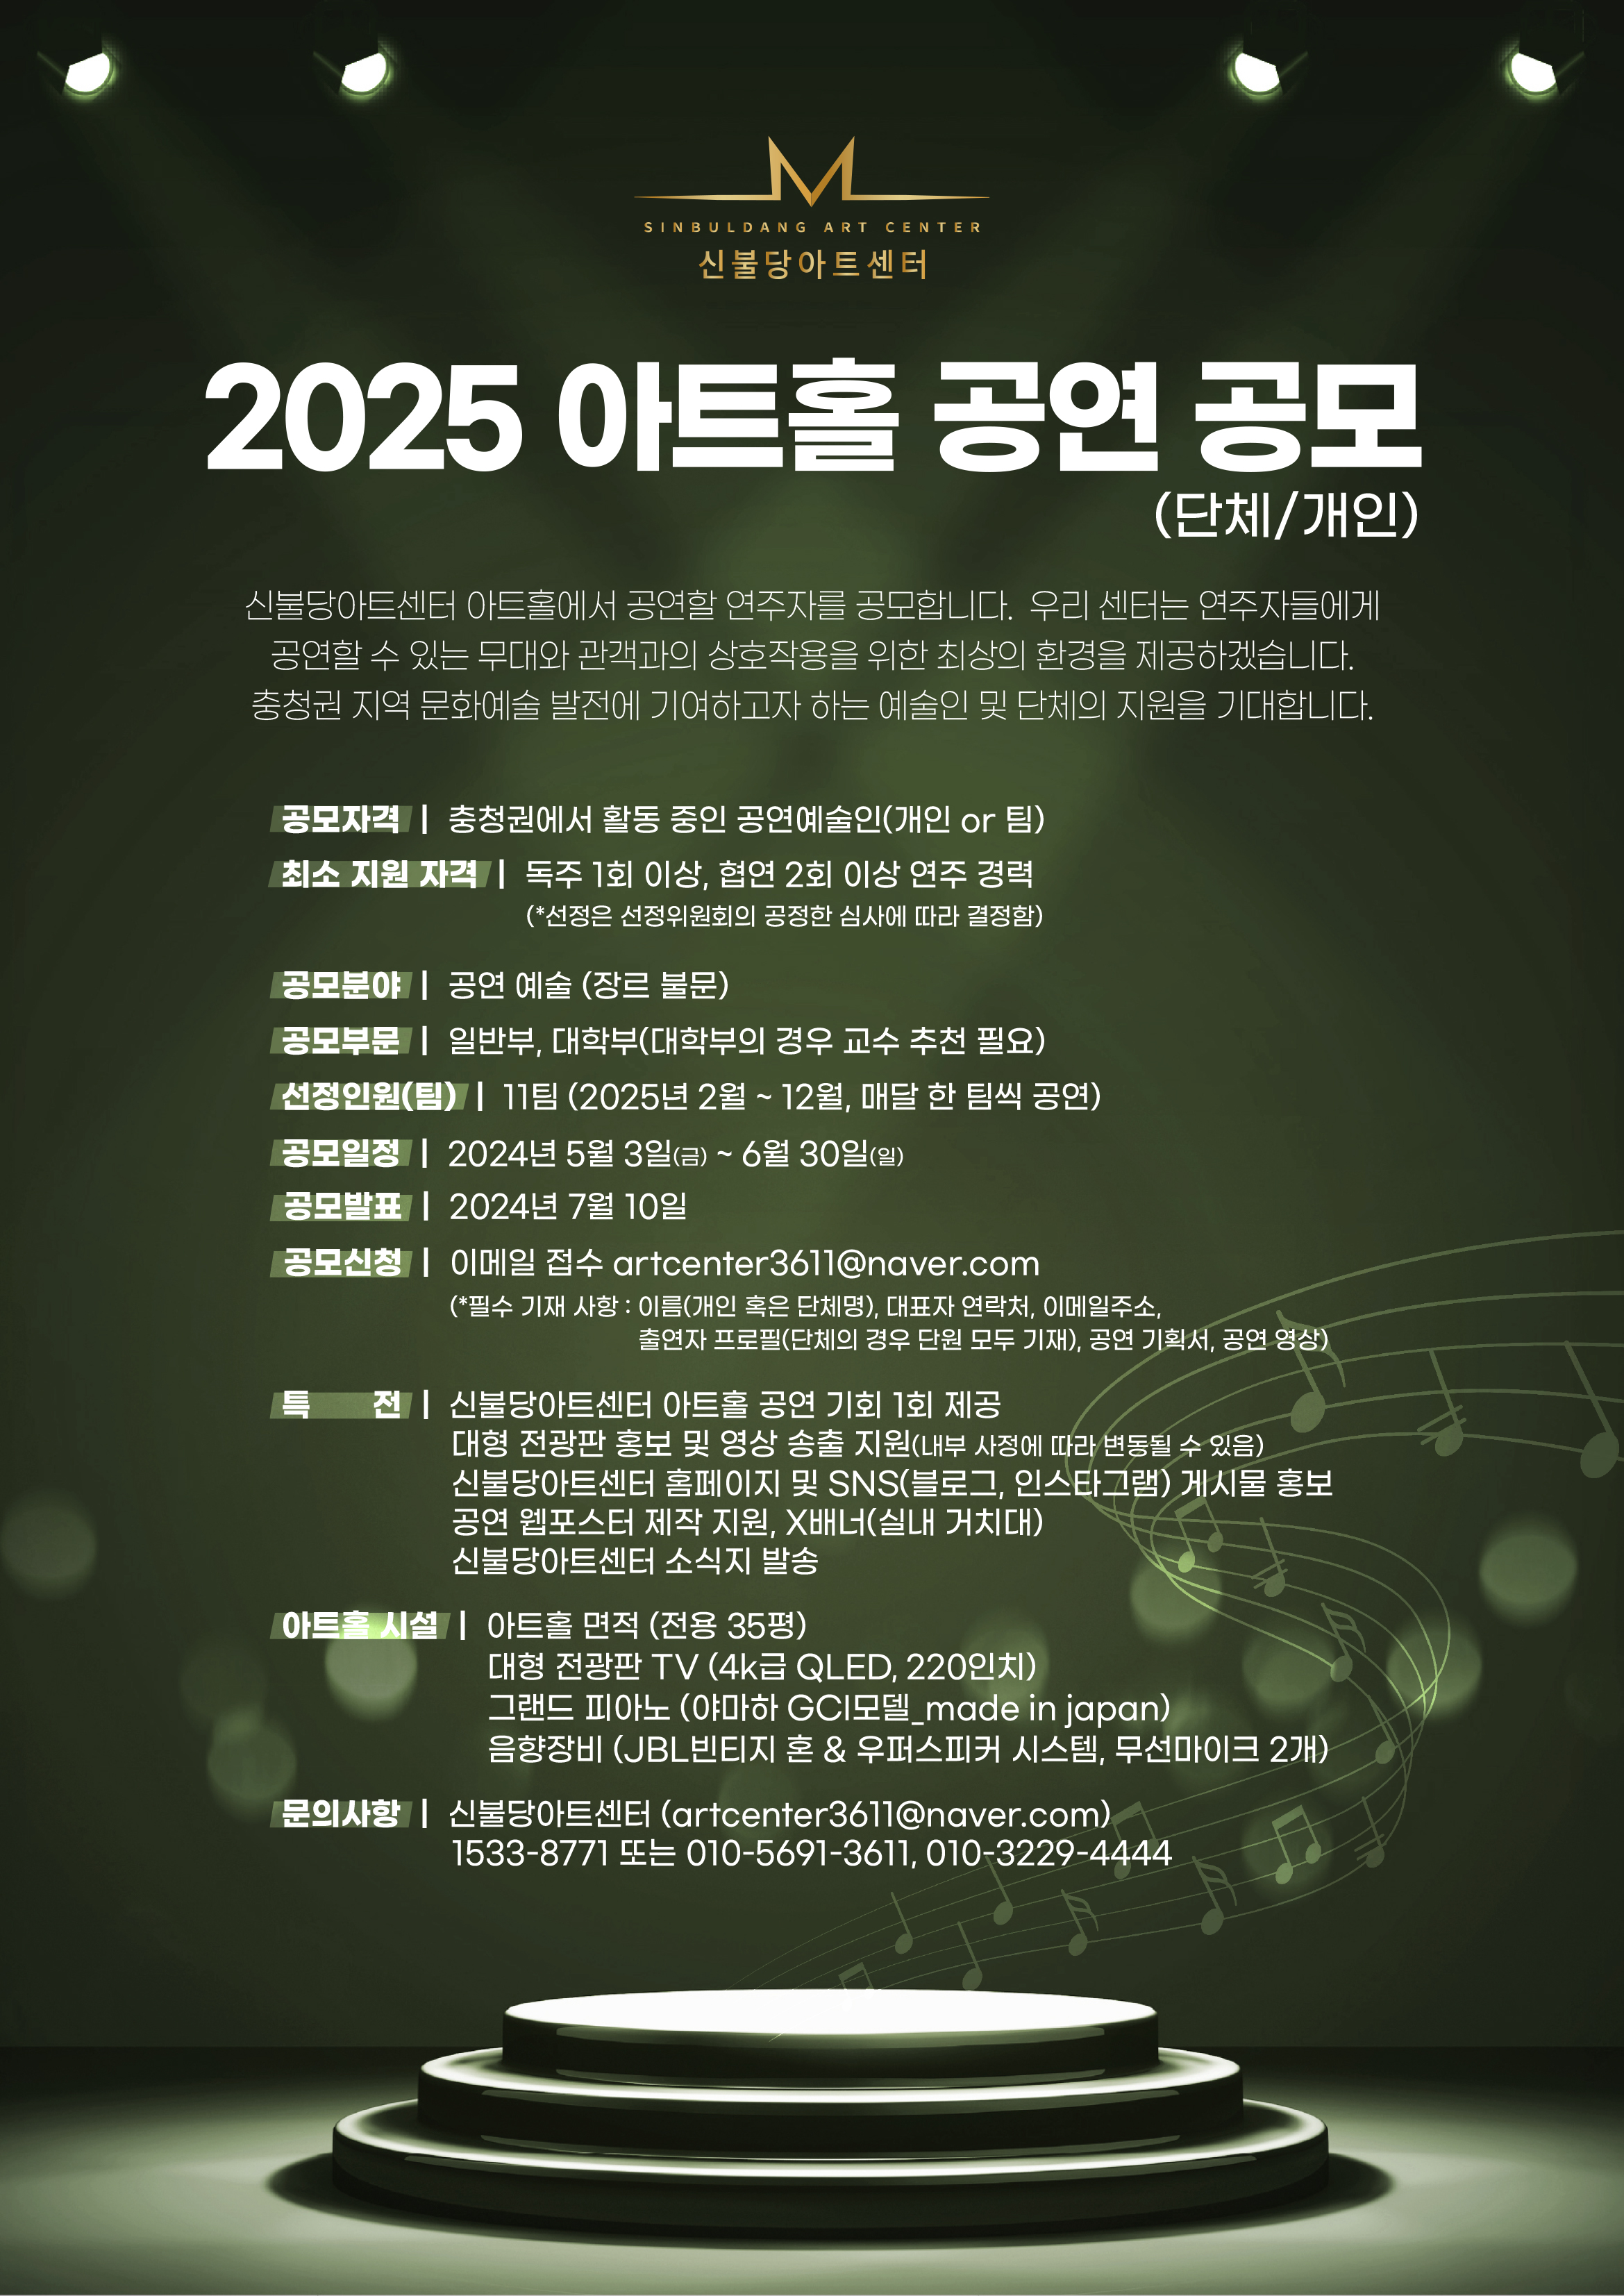 신불당아트센터 :: 2025 아트홀 공연 단체/개인 공모